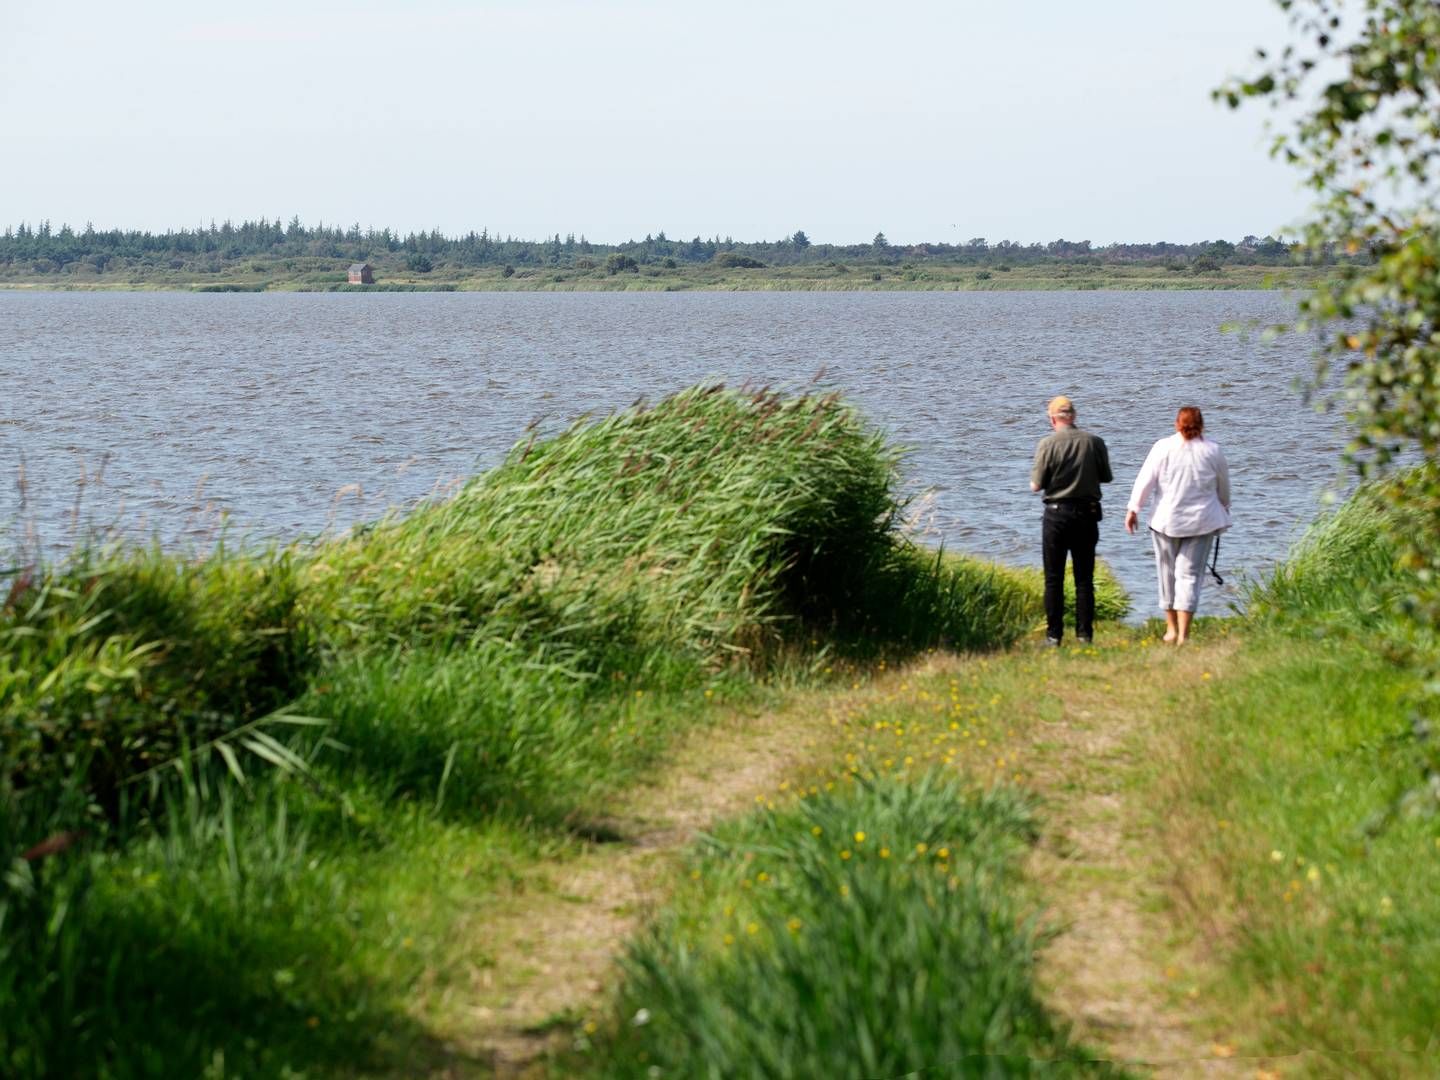 Aage V. Jensens Naturfond erhvervede i 2010 Filsøområdet og genoprettede søen. | Foto: Morten Langkilde